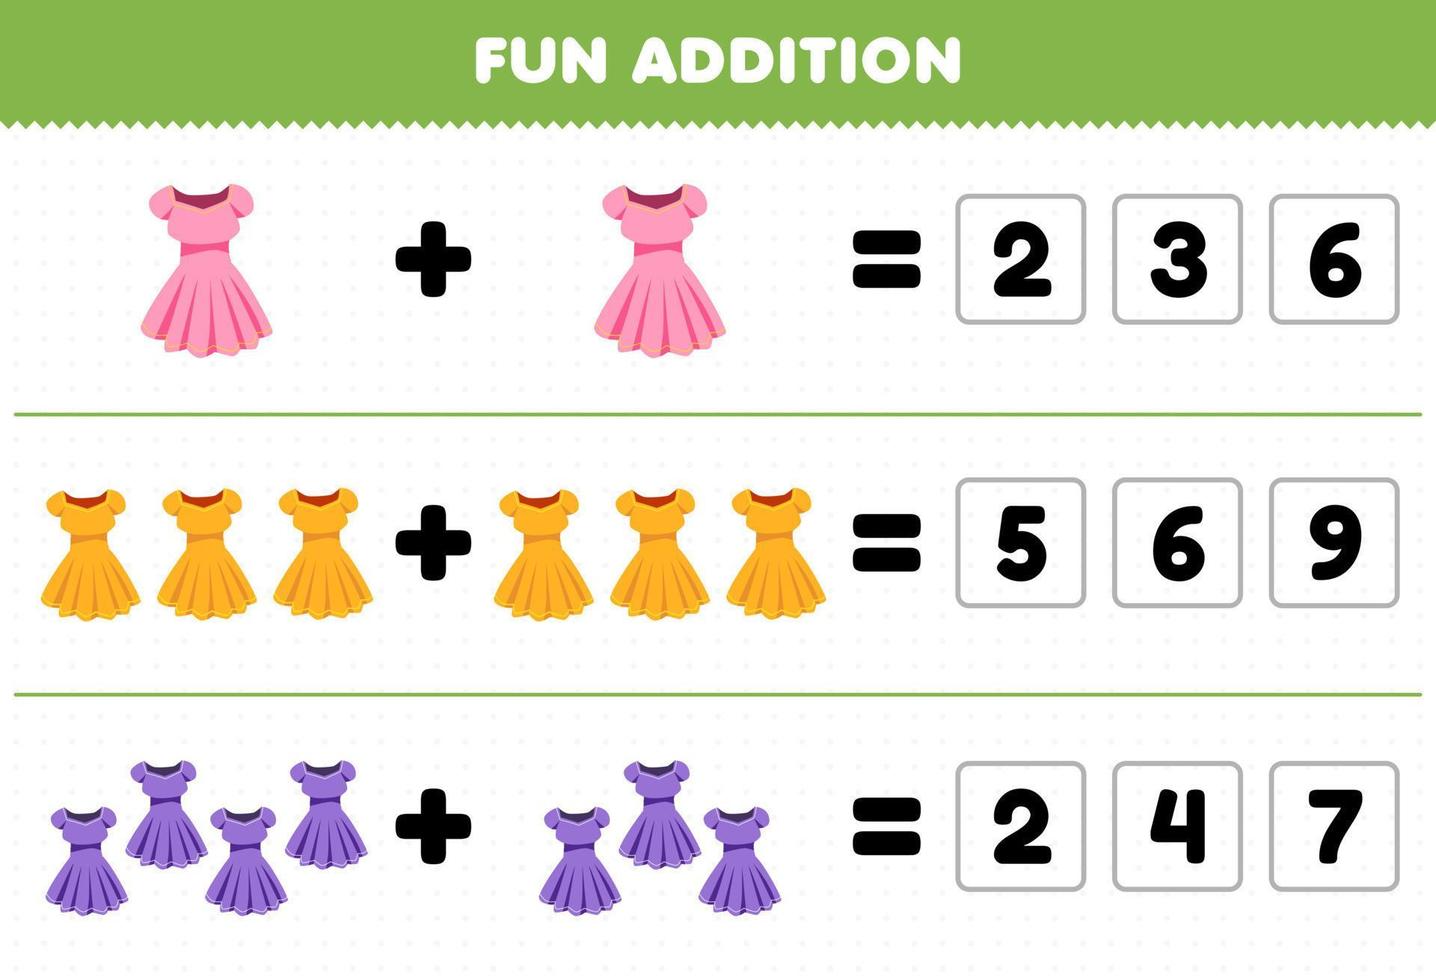 gioco educativo per bambini divertente aggiunta indovinando il numero corretto di vestiti indossabili vestito foglio di lavoro stampabile vettore